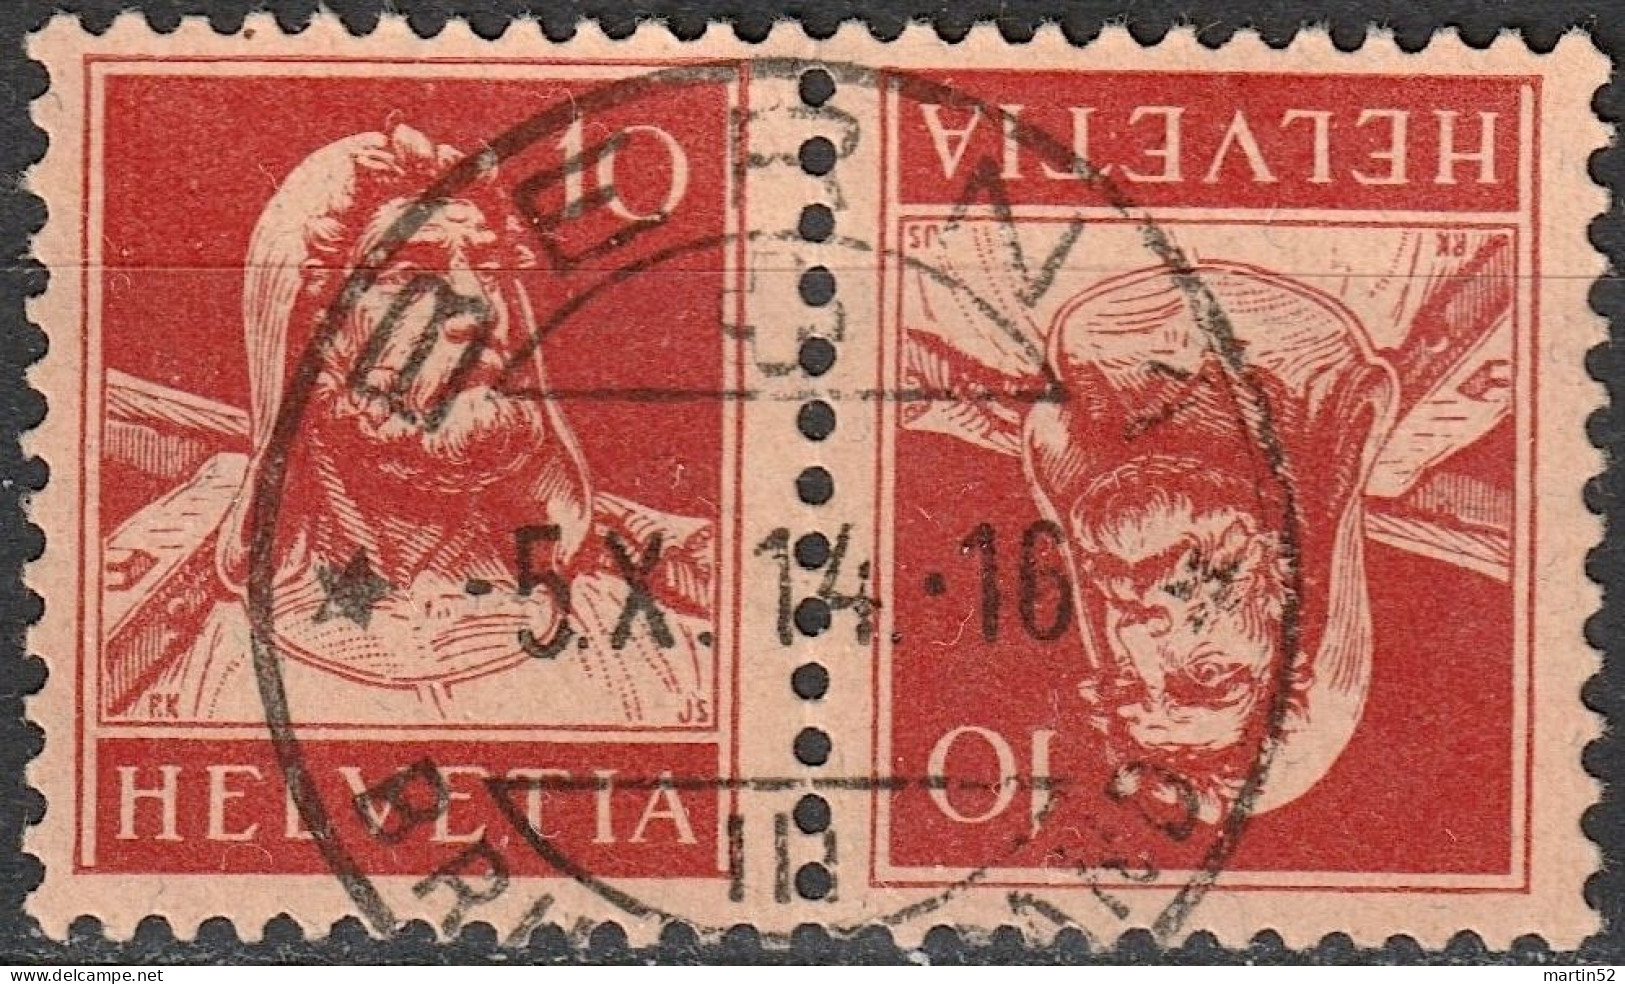 Schweiz Suisse 1915: Tell 10c Kehrdruck Rot / Tête-bêche Rouge Zu K8 Mi K8 Mit Voll-⊙ BERN 5.X.14 (Zu CHF 18.00) - Tete Beche